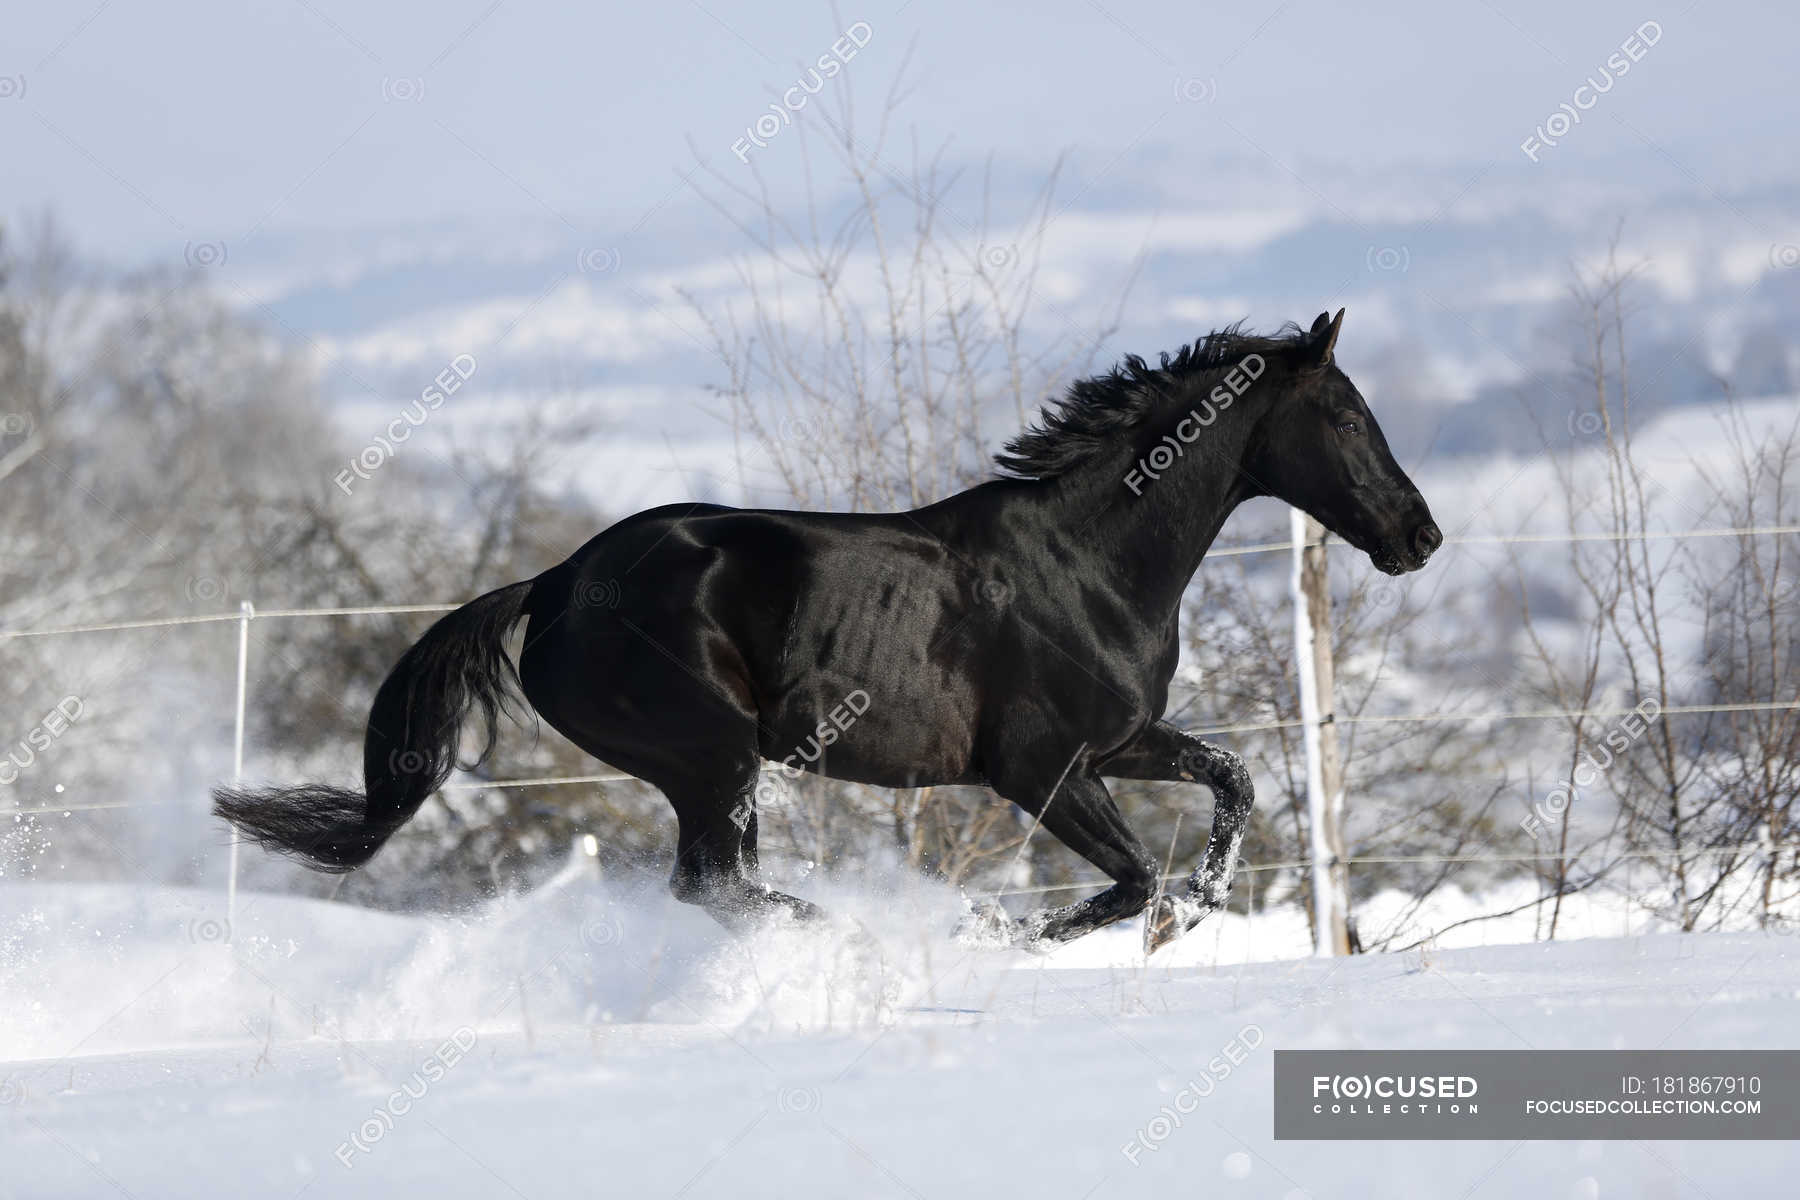 45+] Black Horse Wallpaper HD - WallpaperSafari